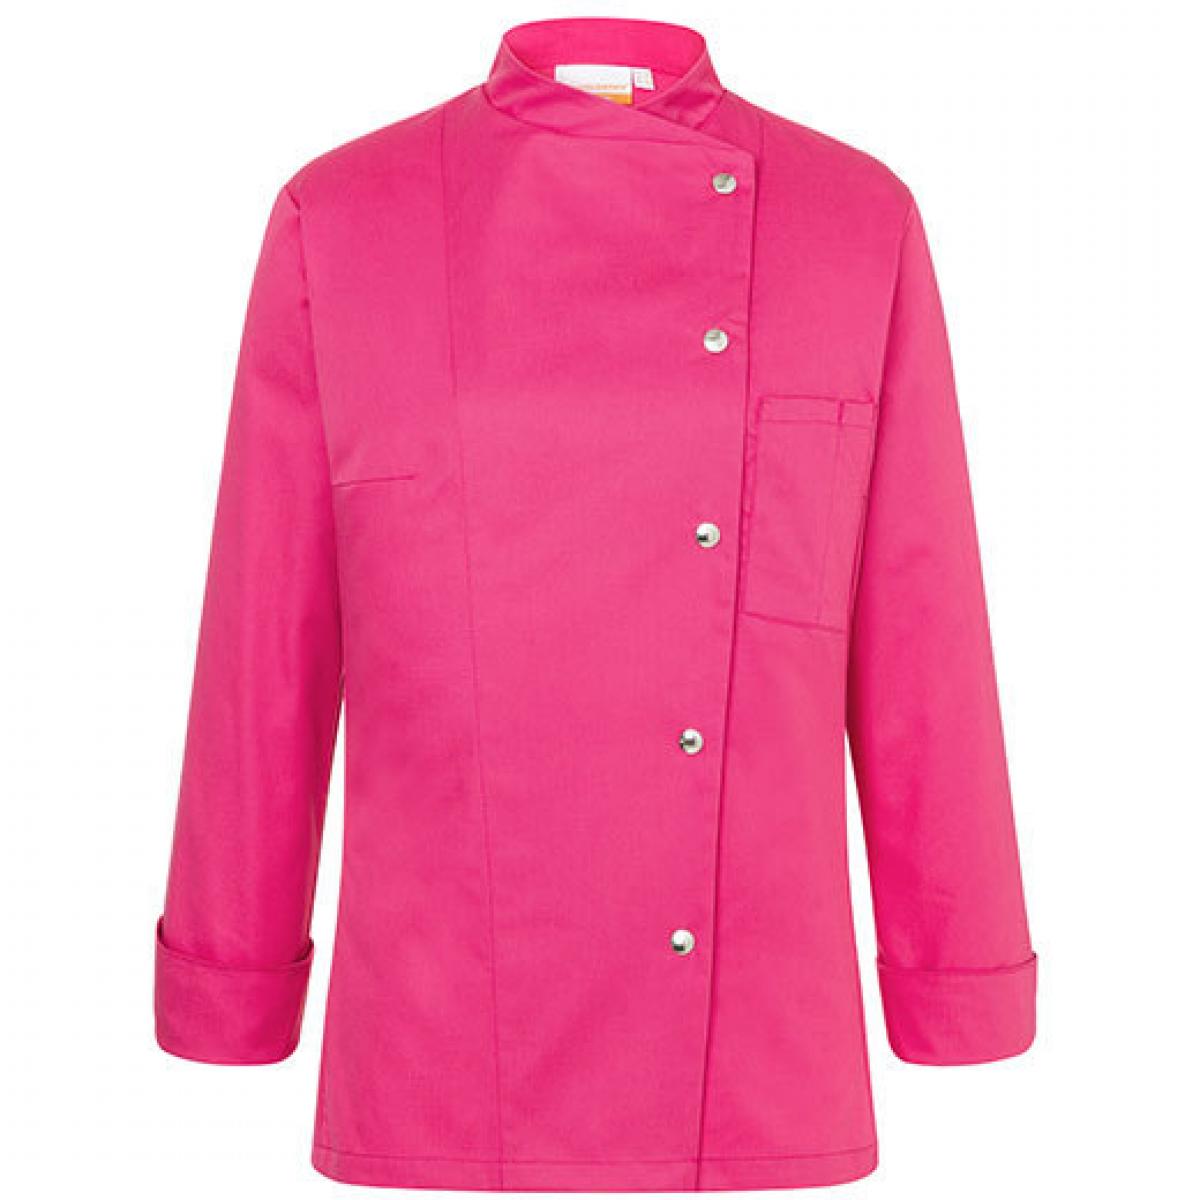 Hersteller: Karlowsky Herstellernummer: JF3 Artikelbezeichnung: Kochjacke Larissa für Damen - Waschbar bis 95 °C Farbe: Pink (ca. Pantone 7636C)